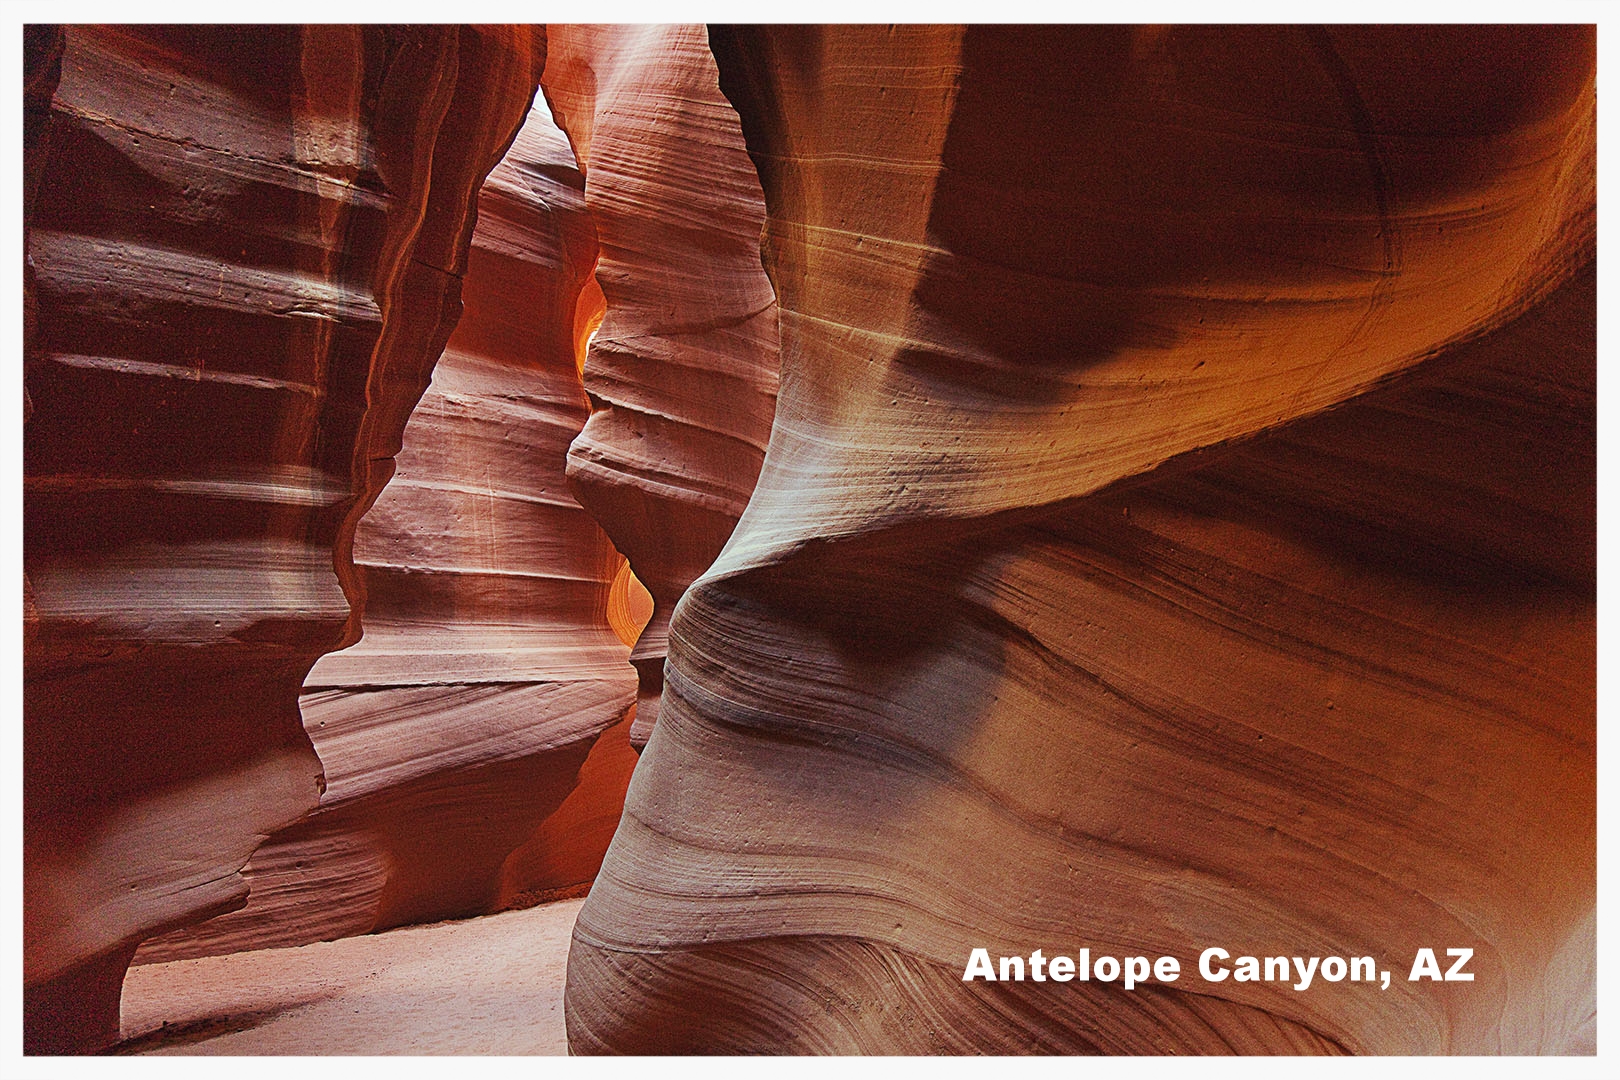    Click to view Antelope Canyon Portfolio   